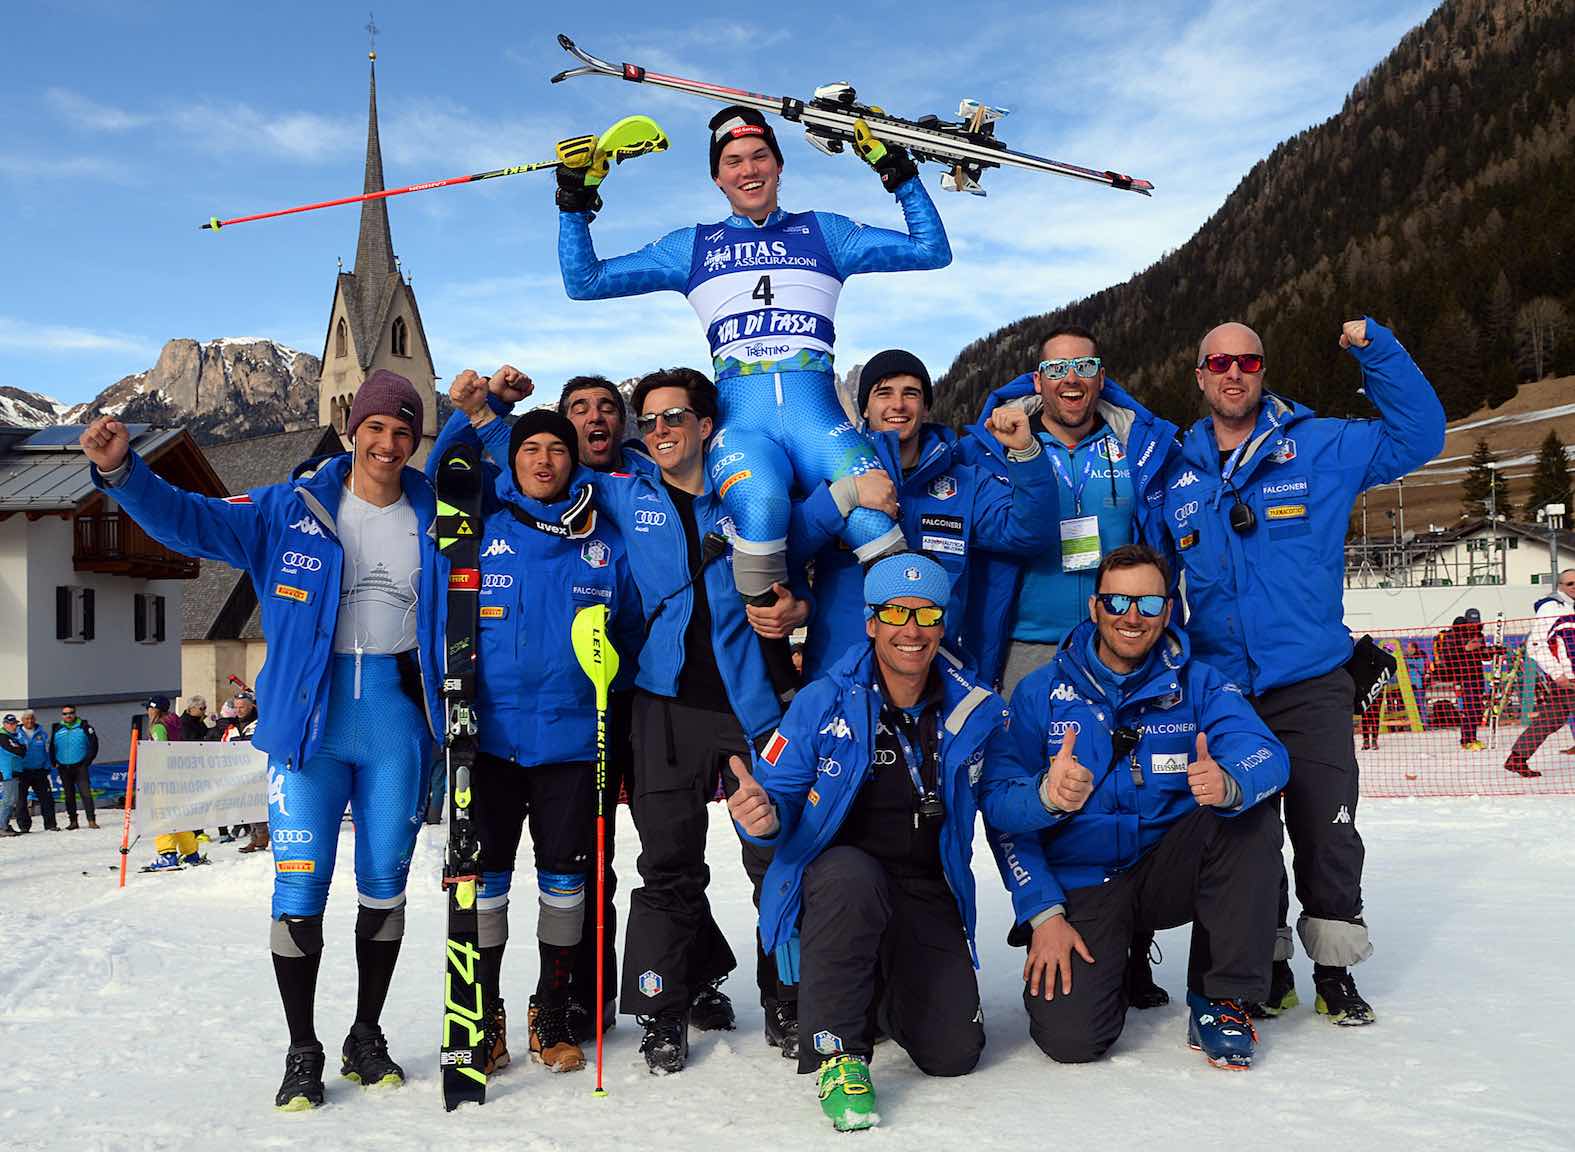 Alex Vinatzer Ã¨ campione del Mondo di slalom speciale: intervista, classifiche, foto e cronaca